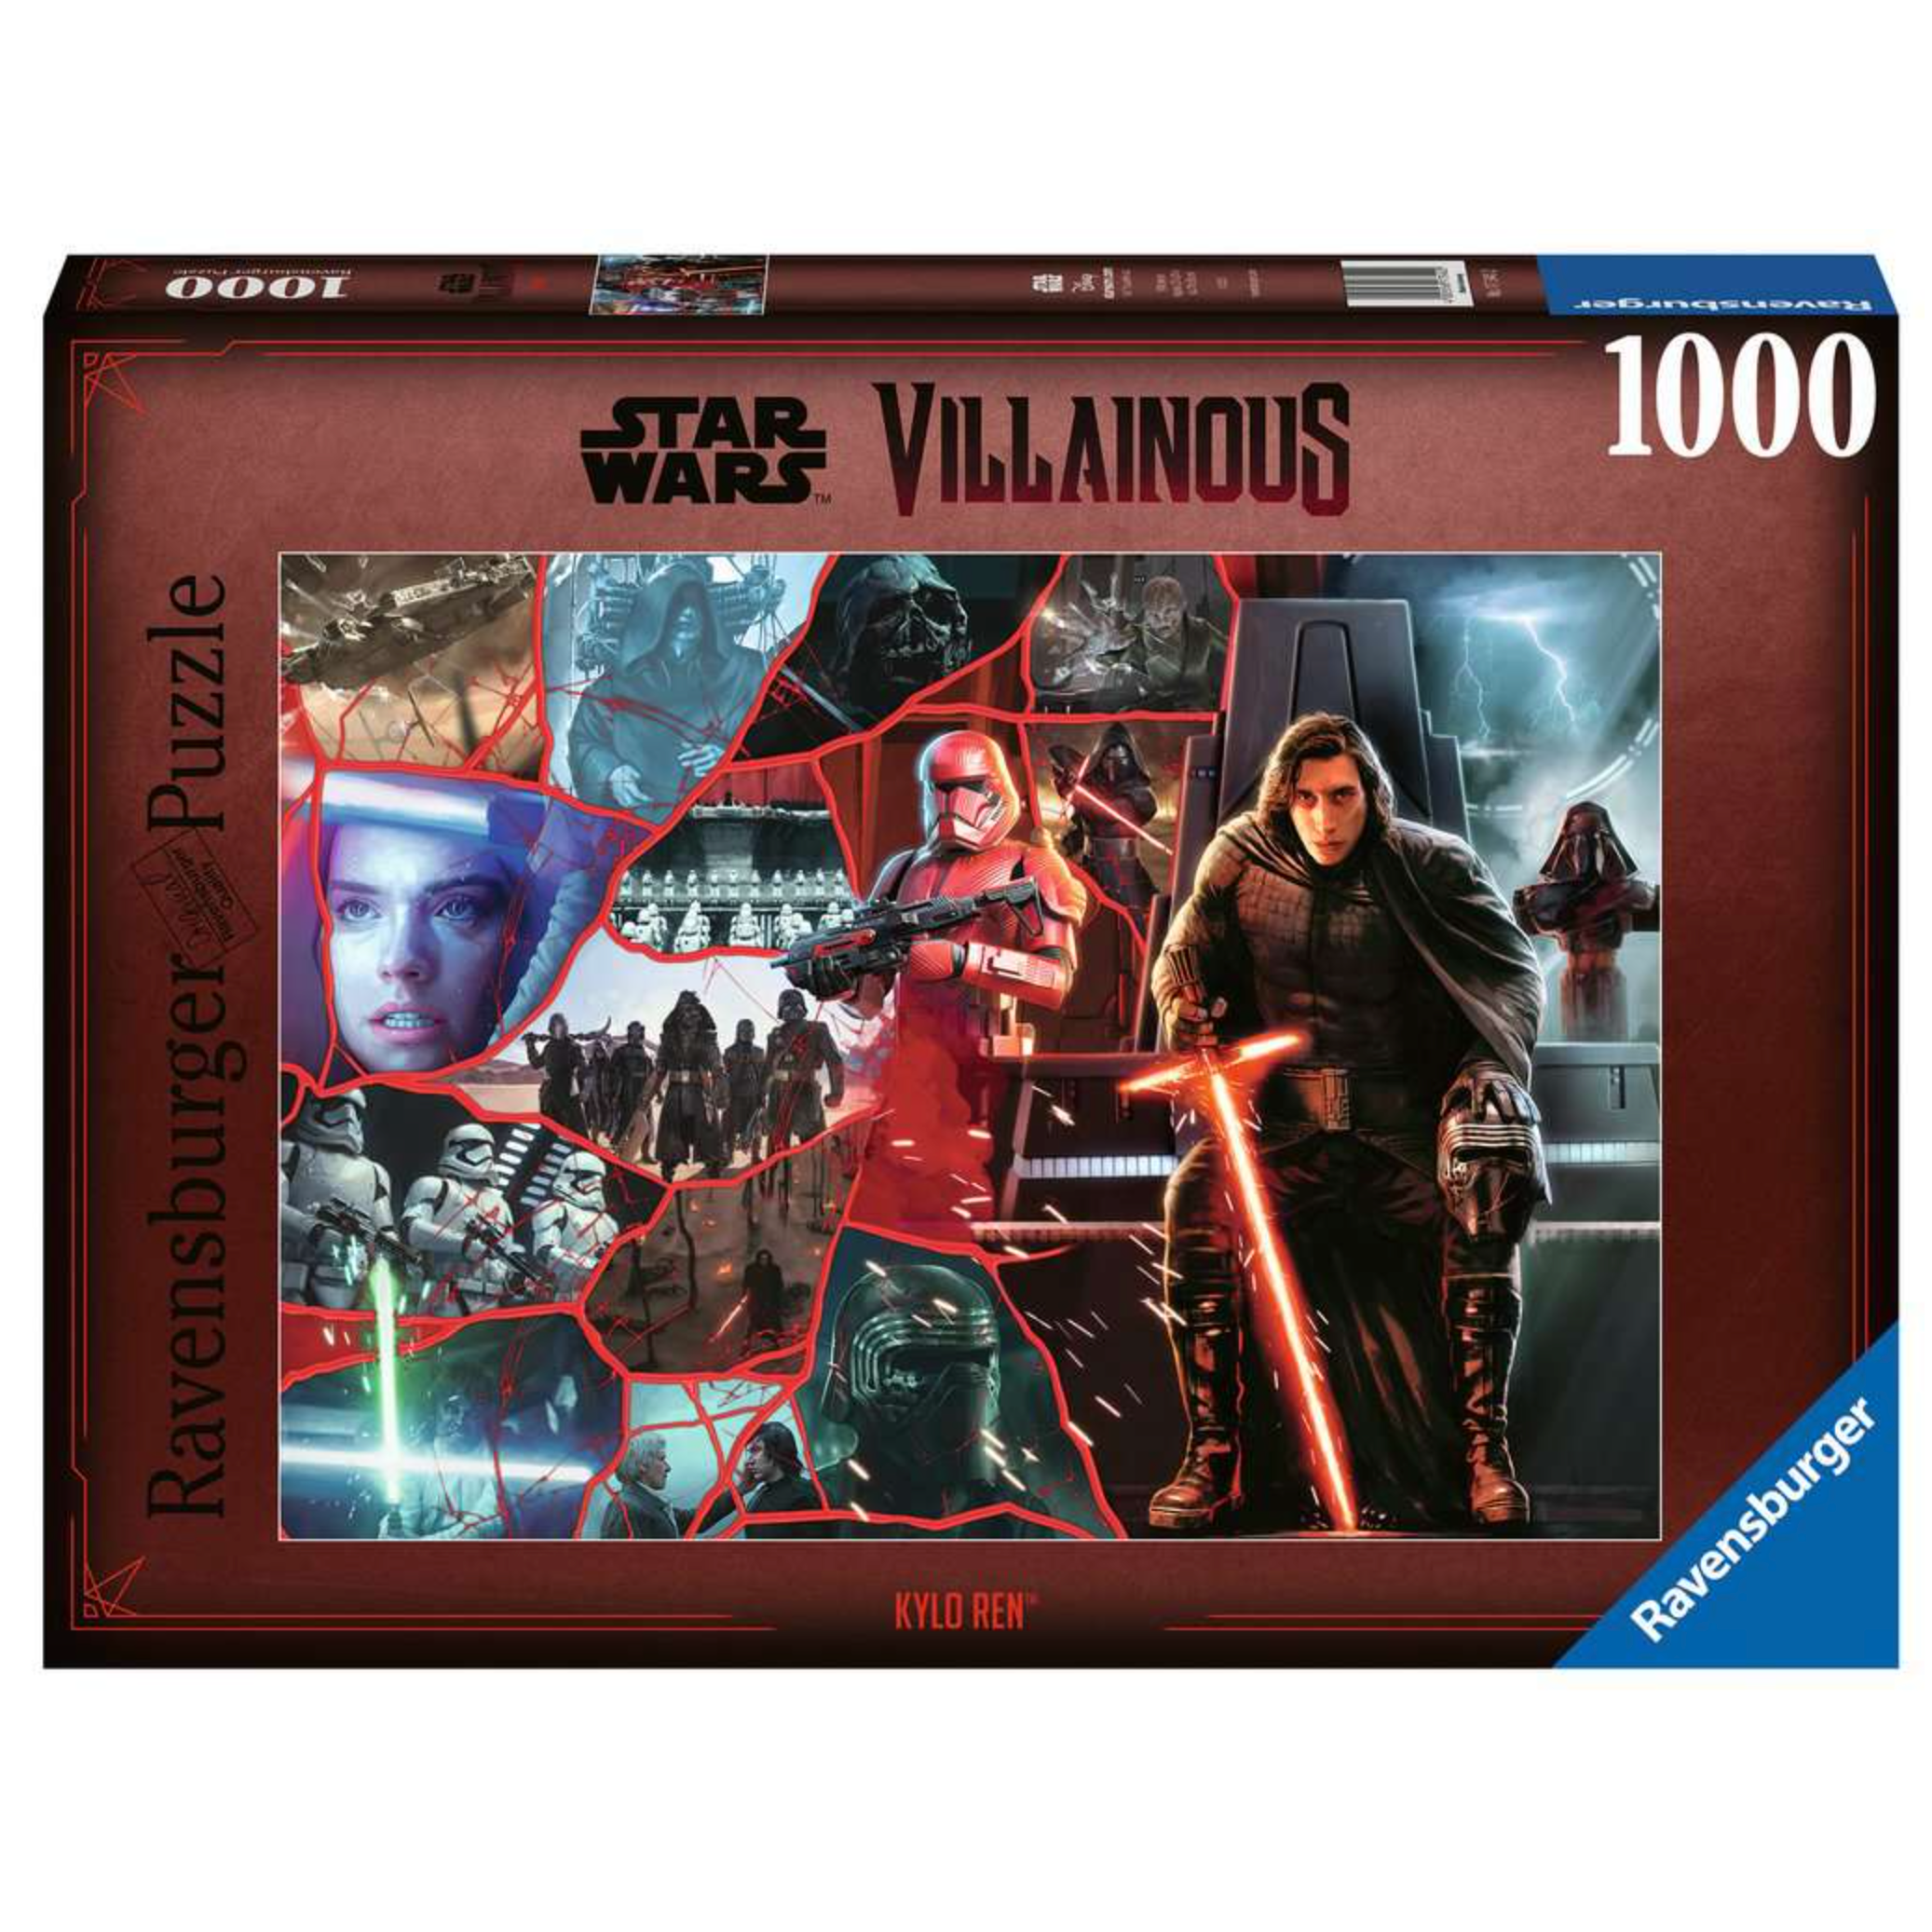 17340 Star Wars Villainous: Kylo Ren 1000pc Puzzle